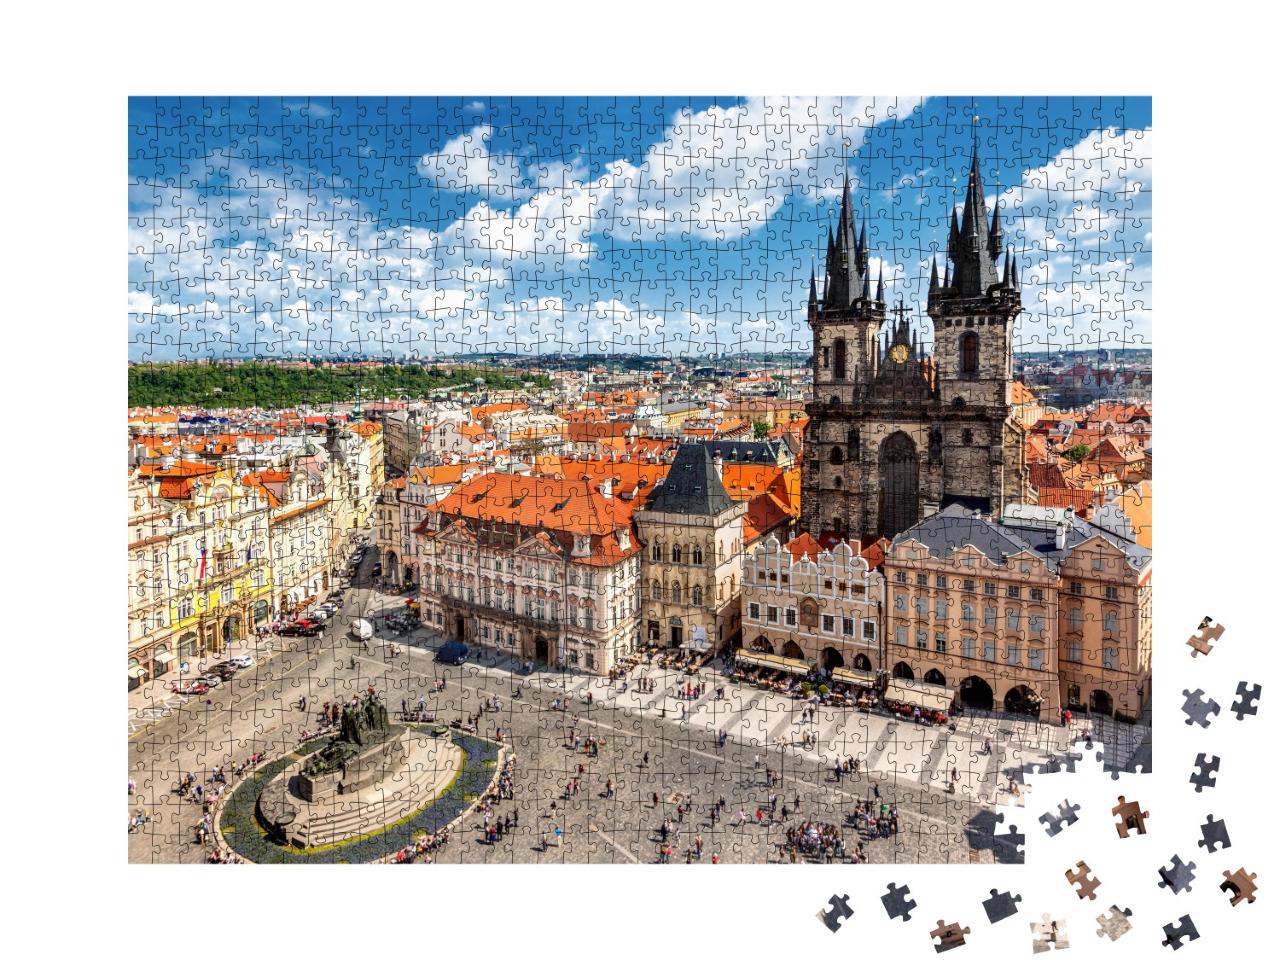 Puzzle de 1000 pièces « La place de la Vieille Ville à Prague »